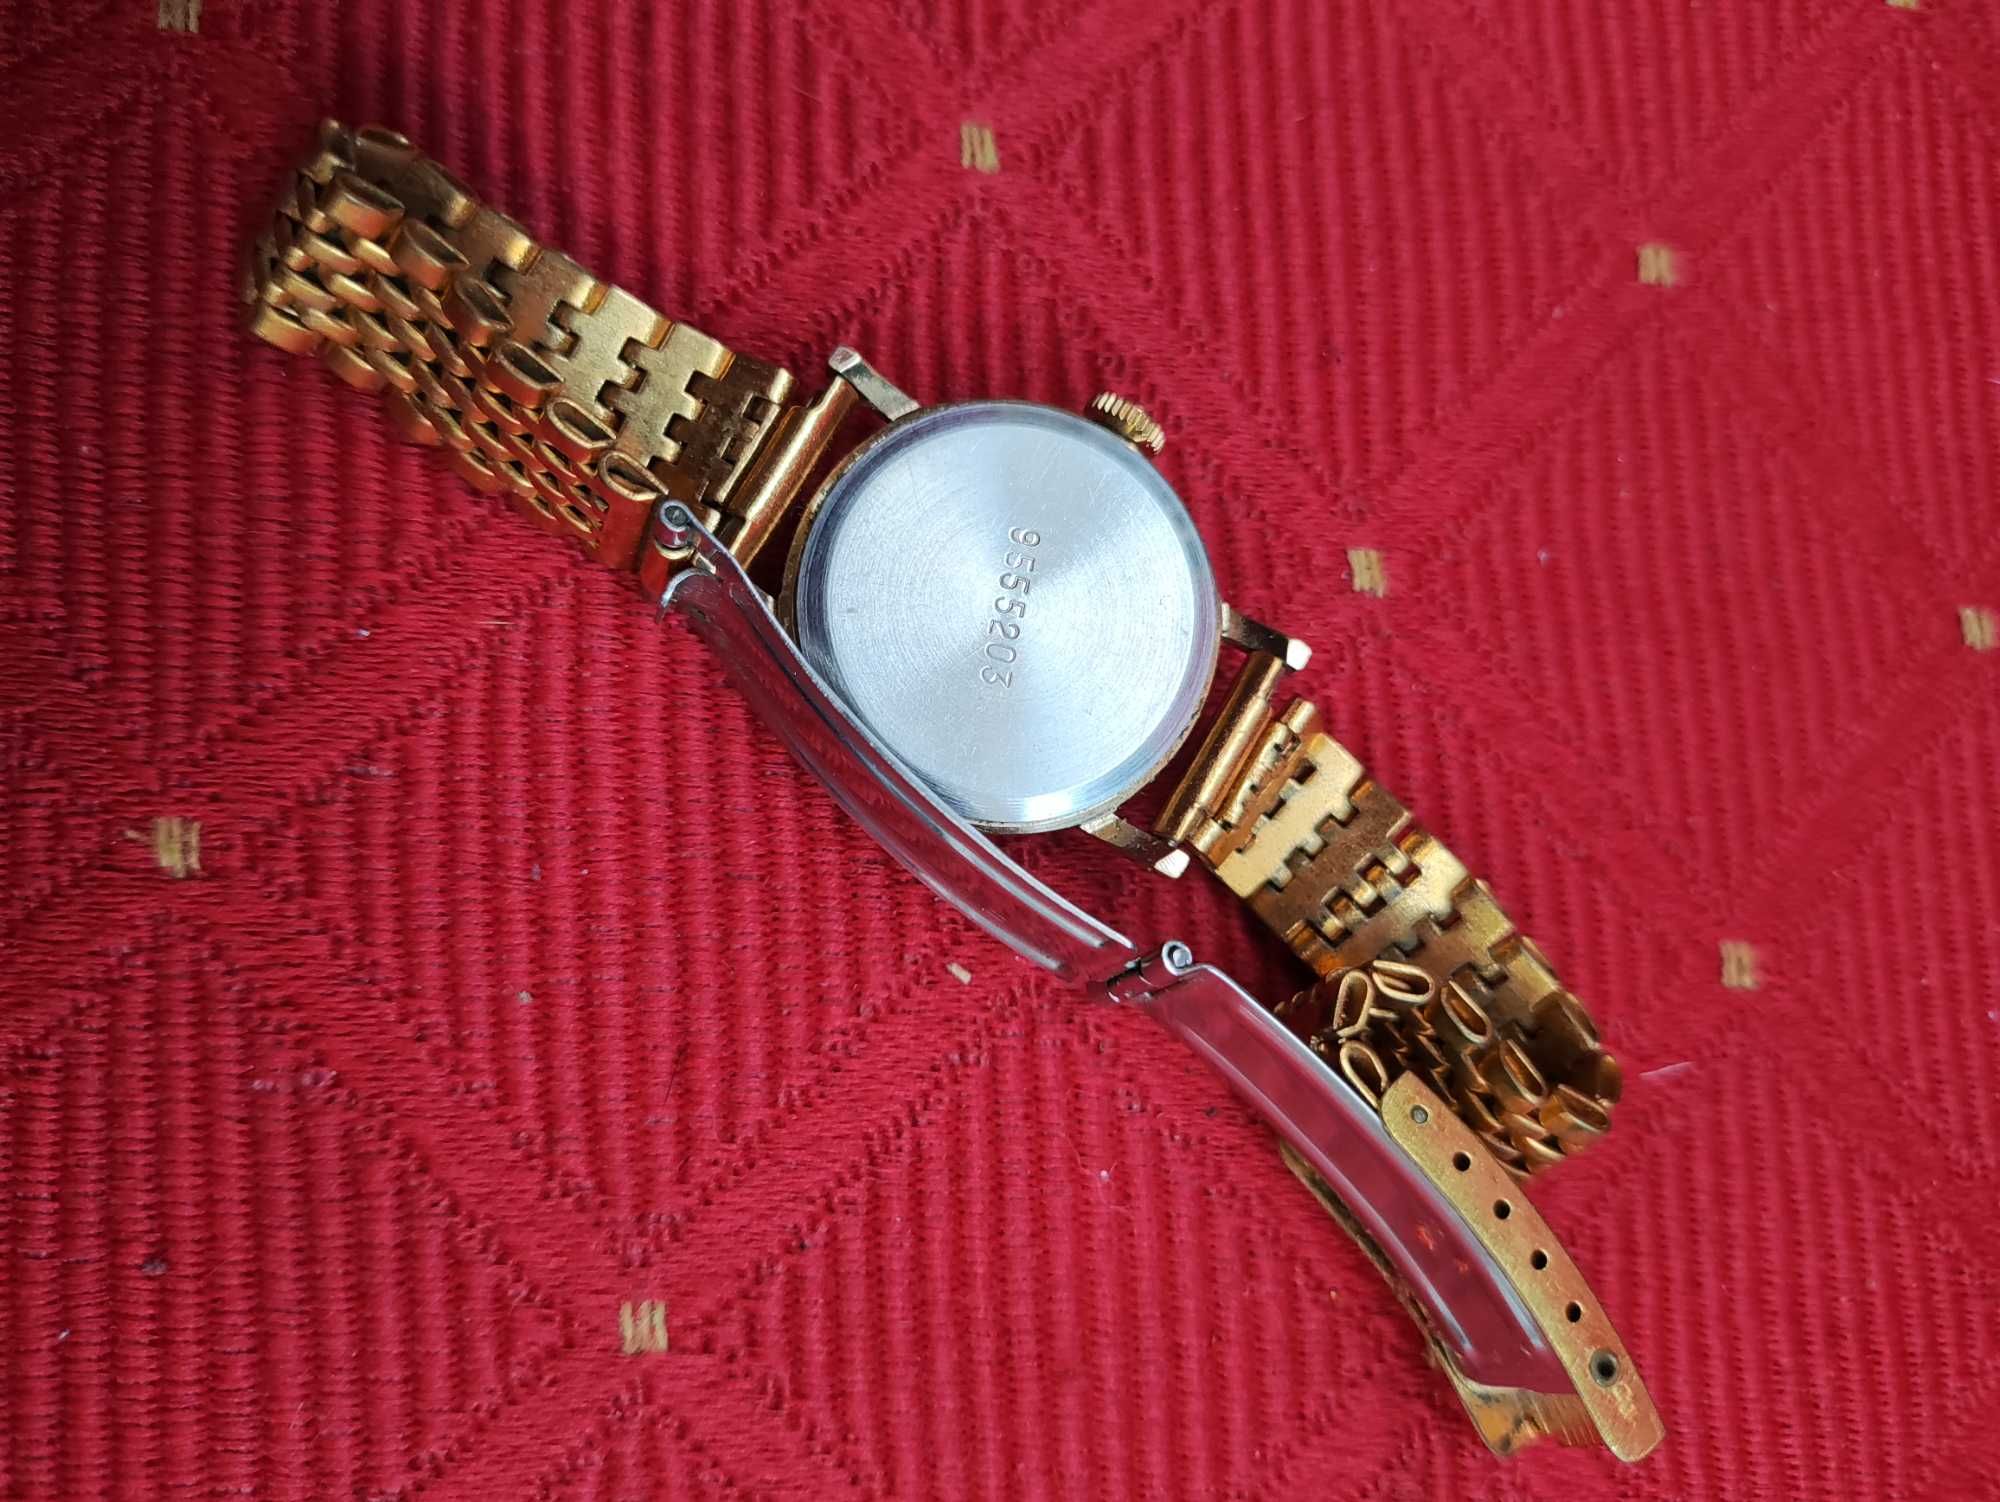 Zegarek Zaria Jewels damski Zegar złoty analogowy nakręcany pozłacany